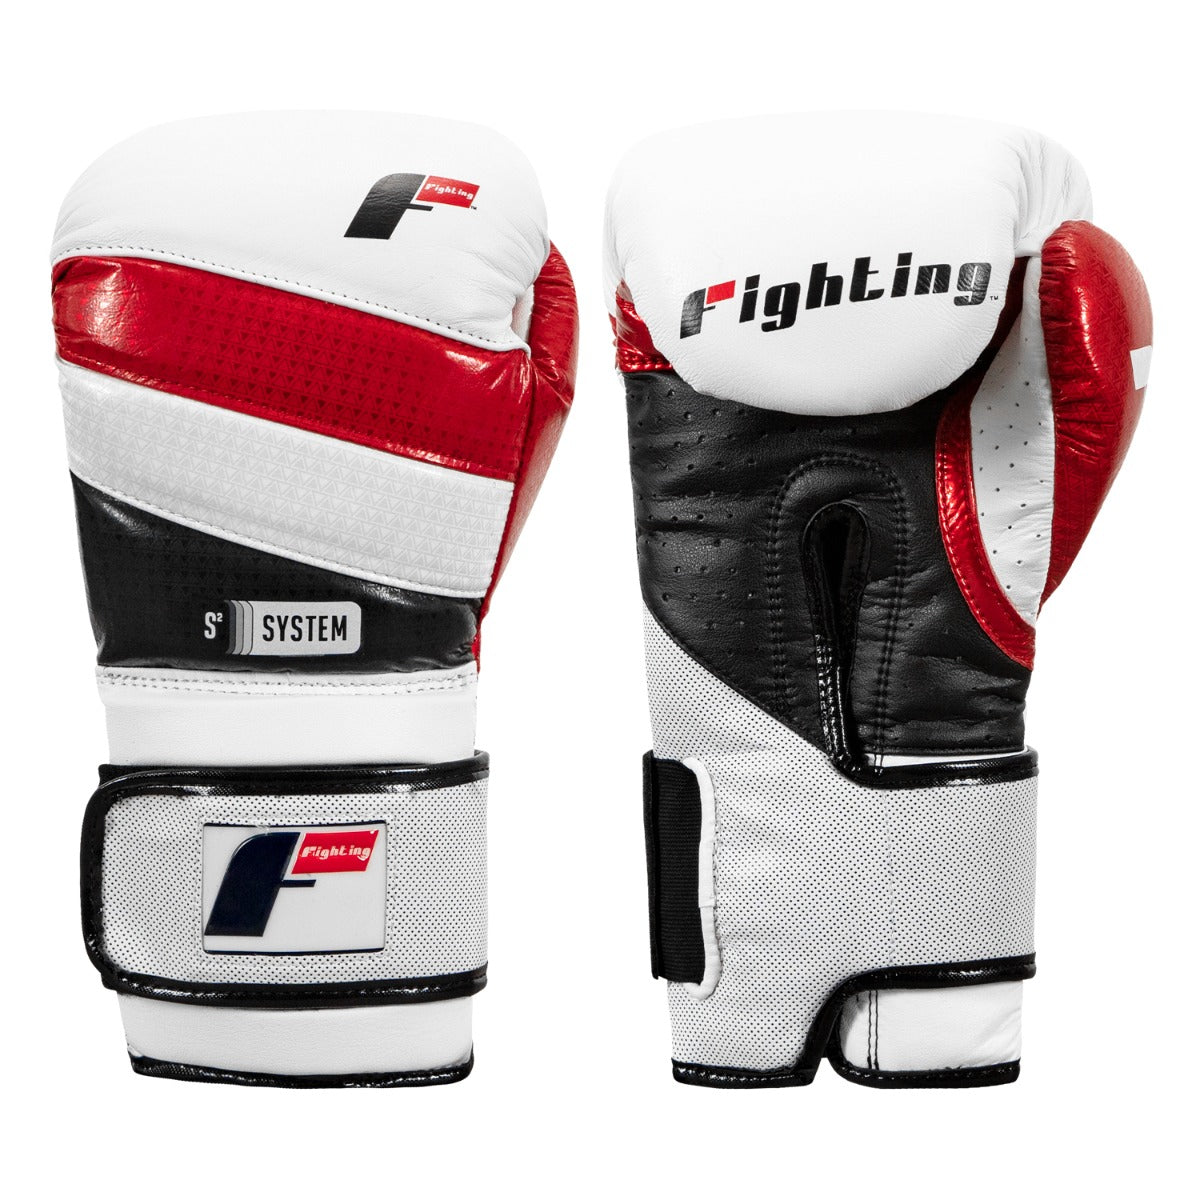 Fighting S2 Gel Fear Training Gloves